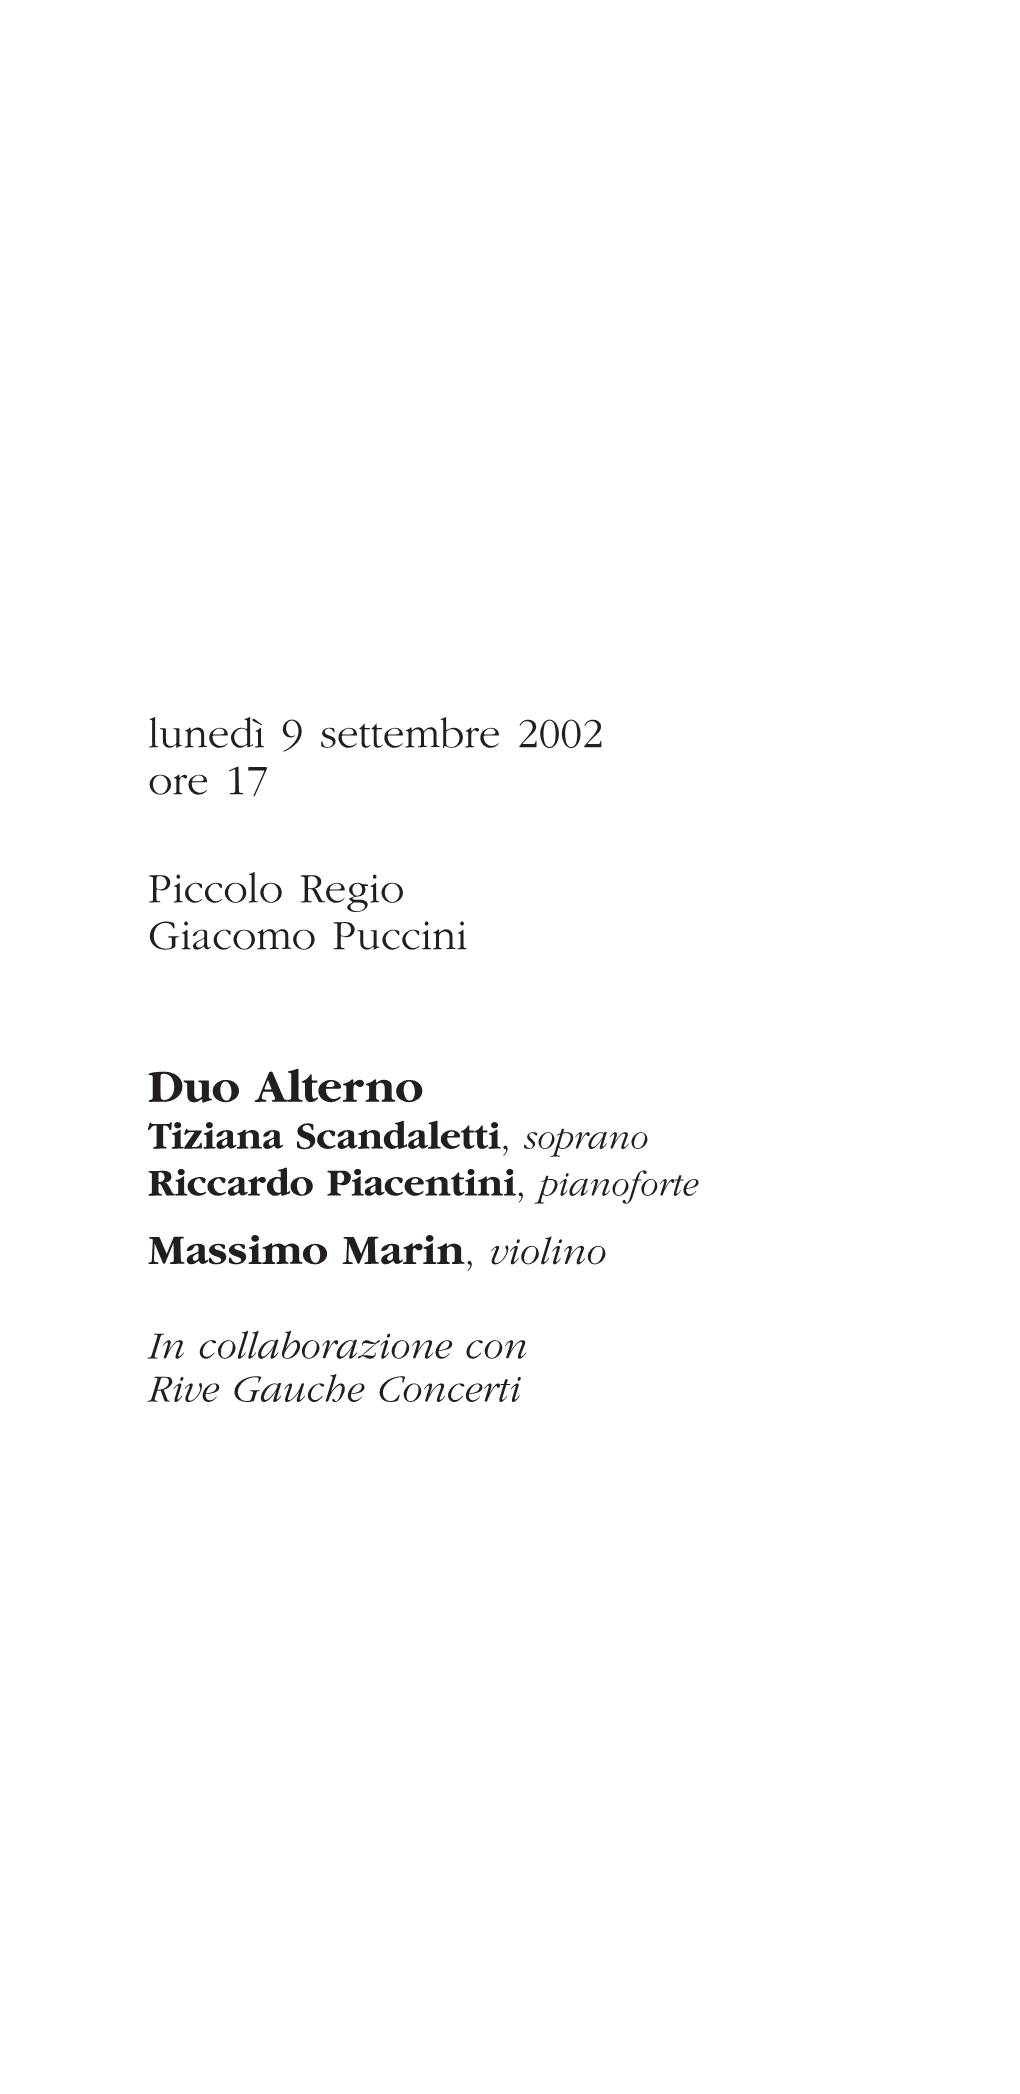 Duo Alterno Tiziana Scandaletti, Soprano Riccardo Piacentini, Pianoforte Massimo Marin, Violino